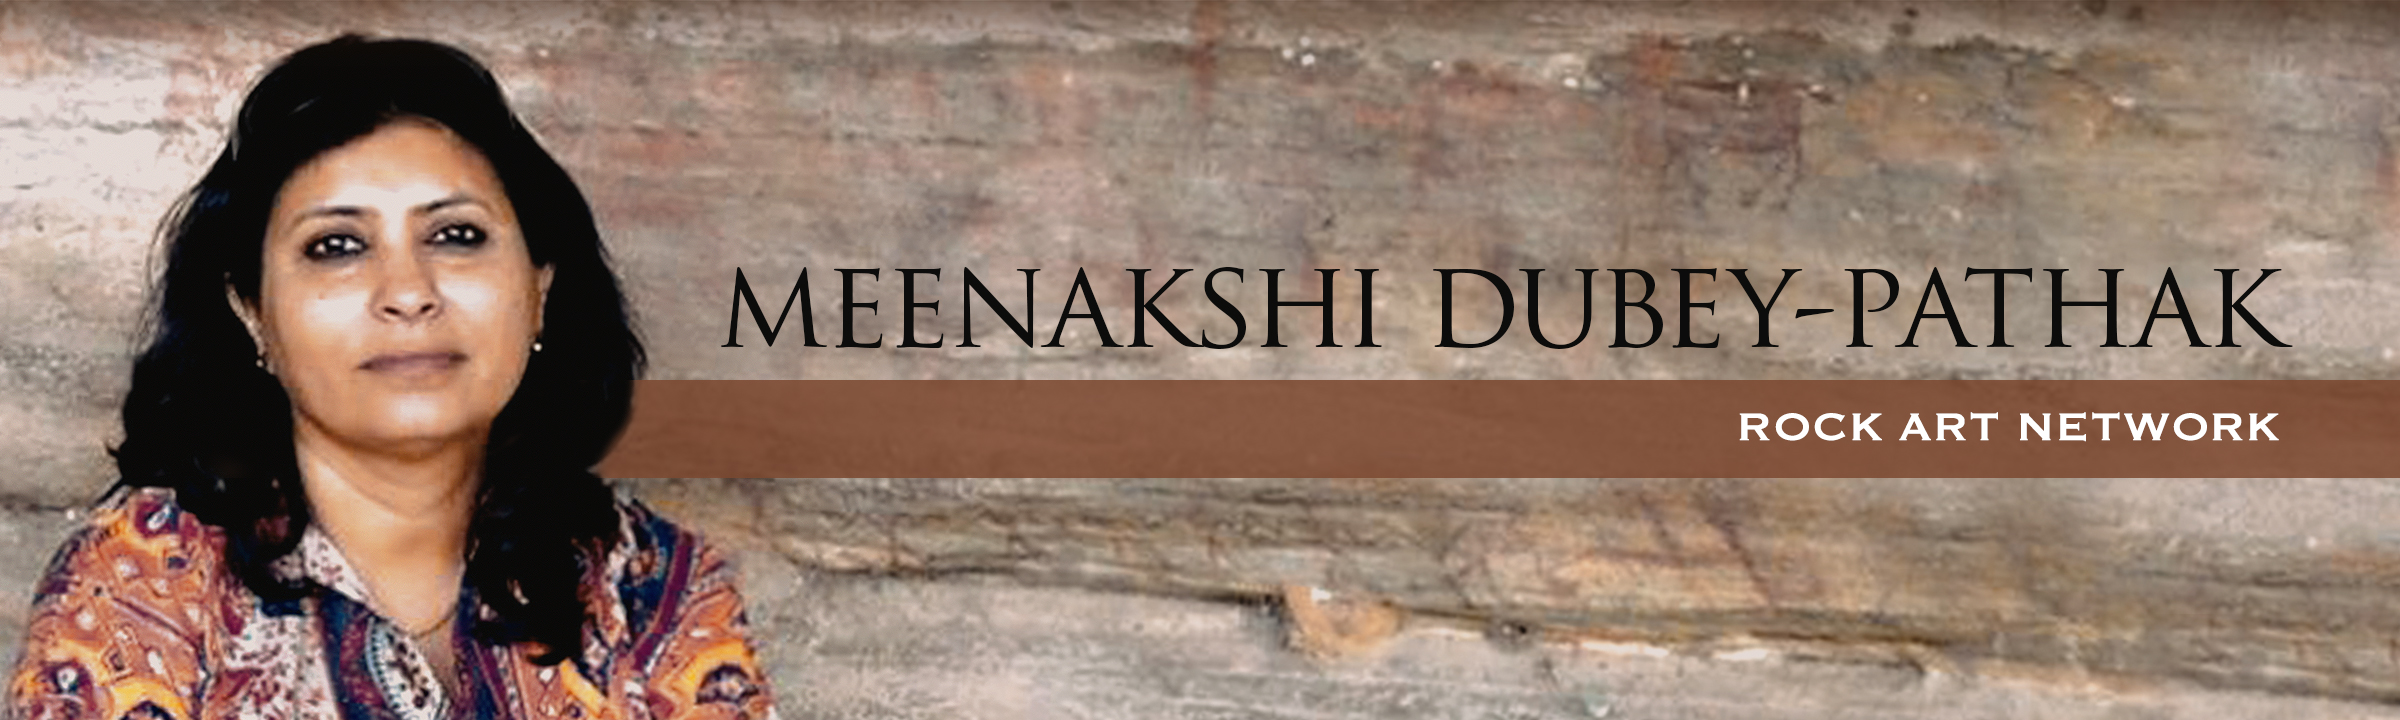 rock Art Network Meenakshi Dubey-Pathak